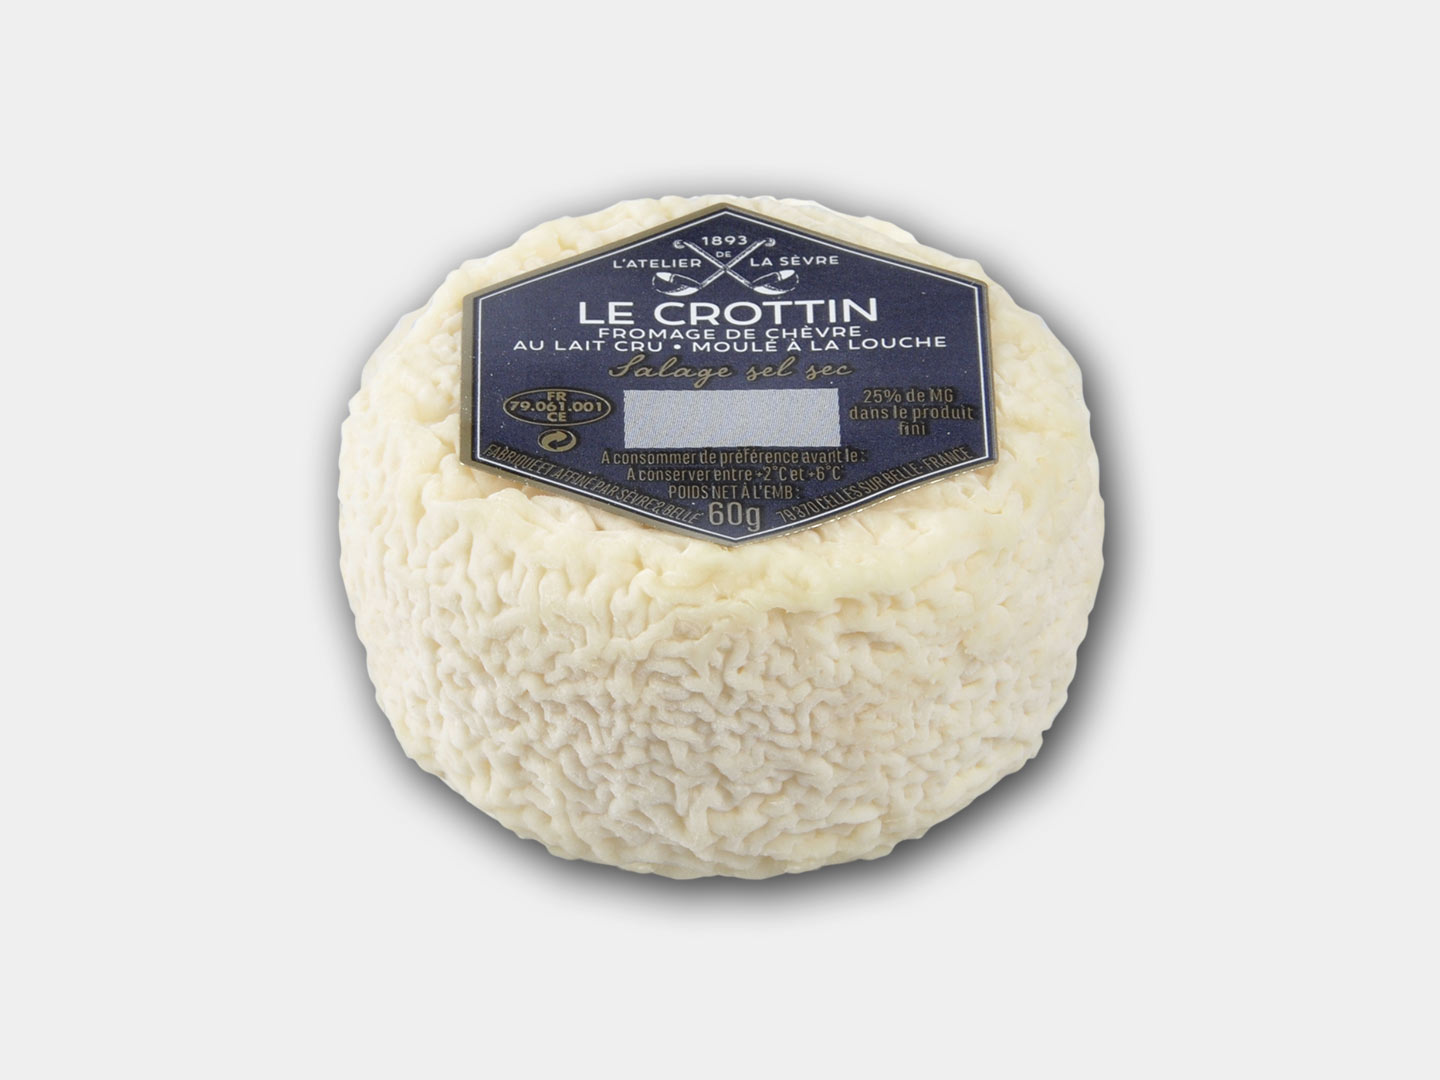 Le Crottin 60g - fromage de chèvre au lait cru - moulé à la louche - Atelier de la sèvre